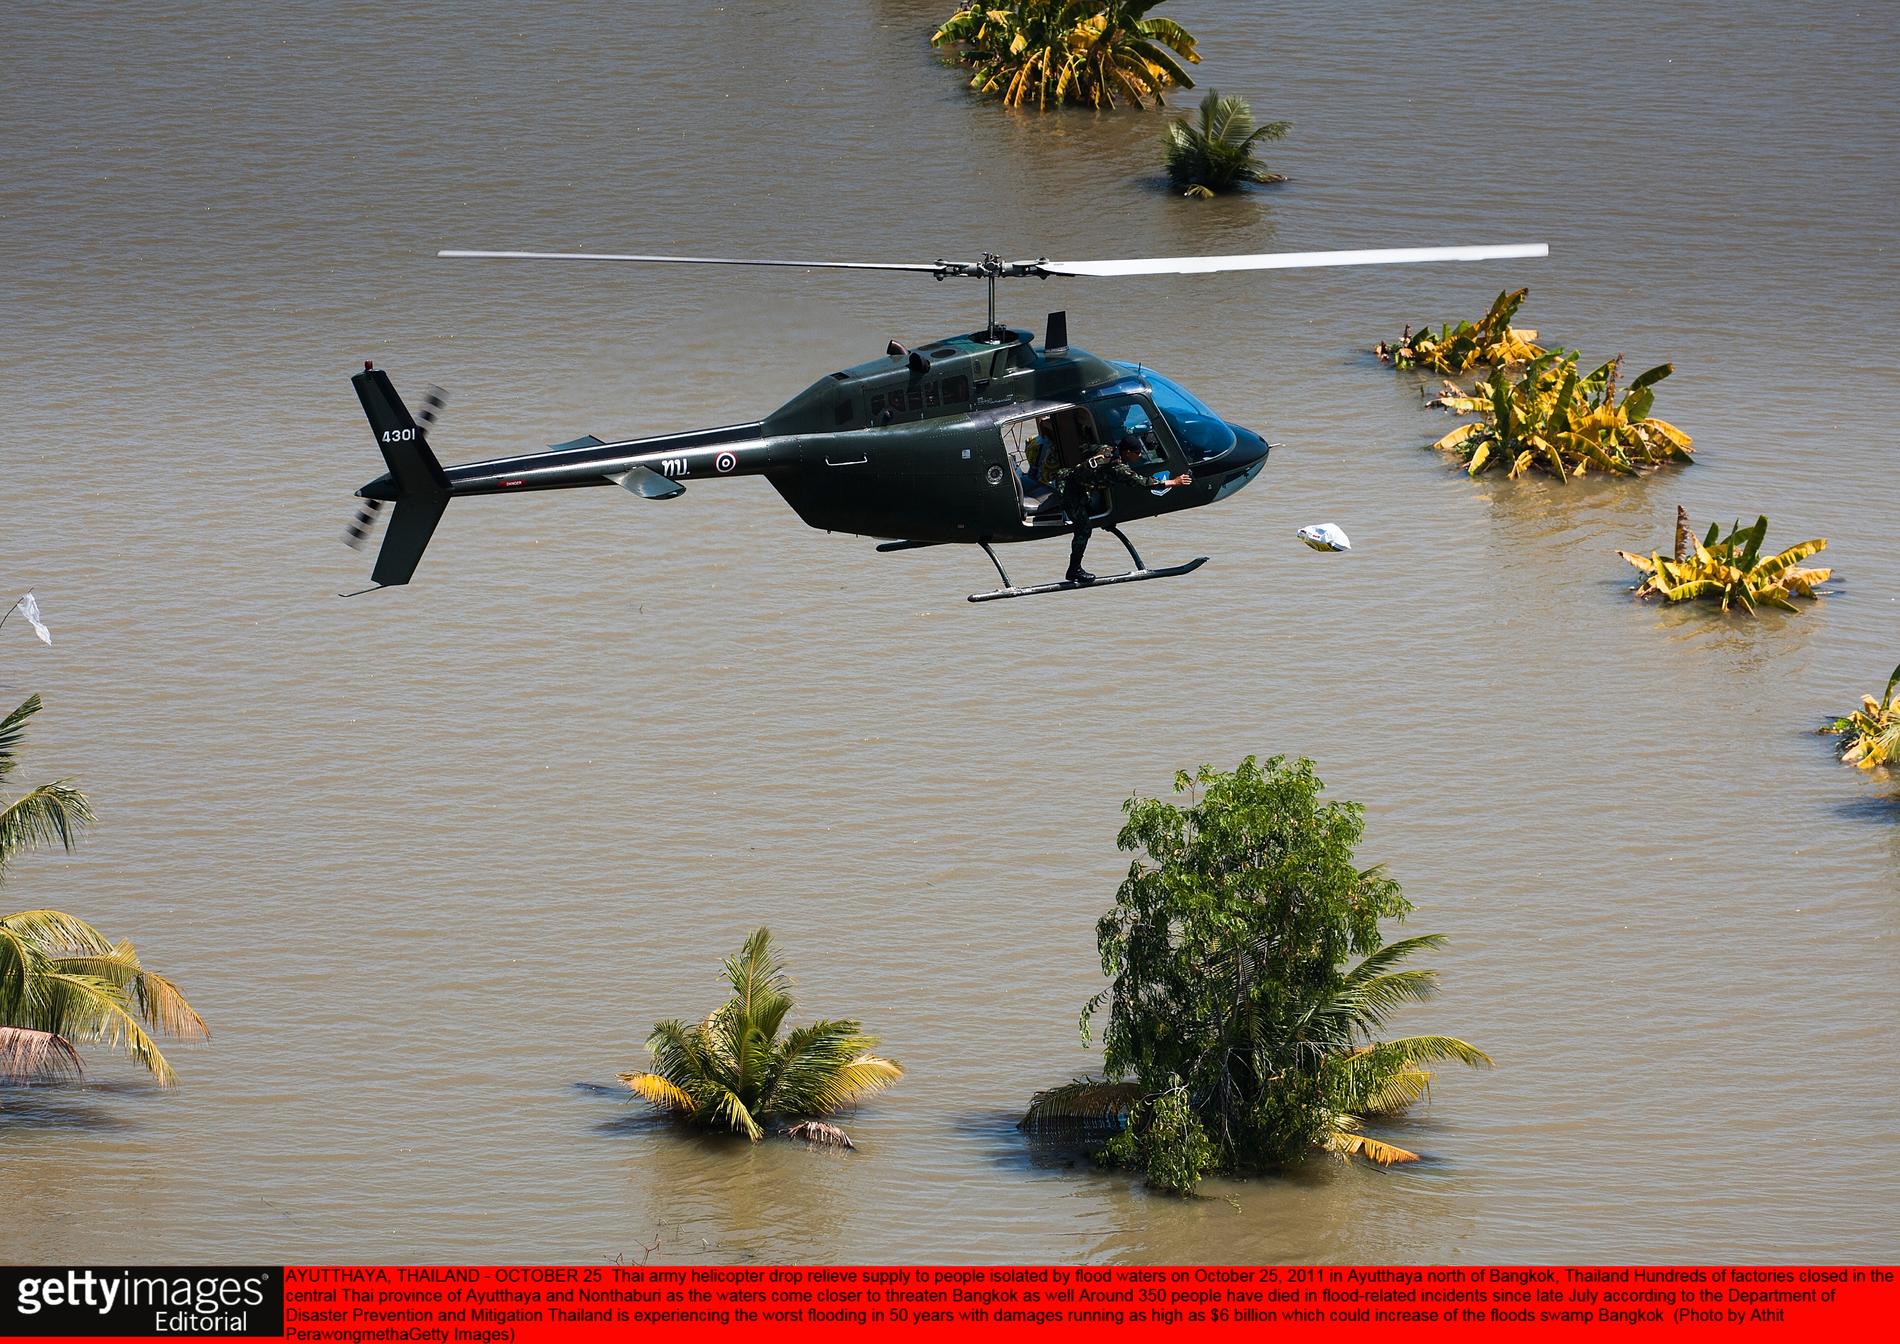 En helikopter levererar matpaket till människor i översvämningsområden.